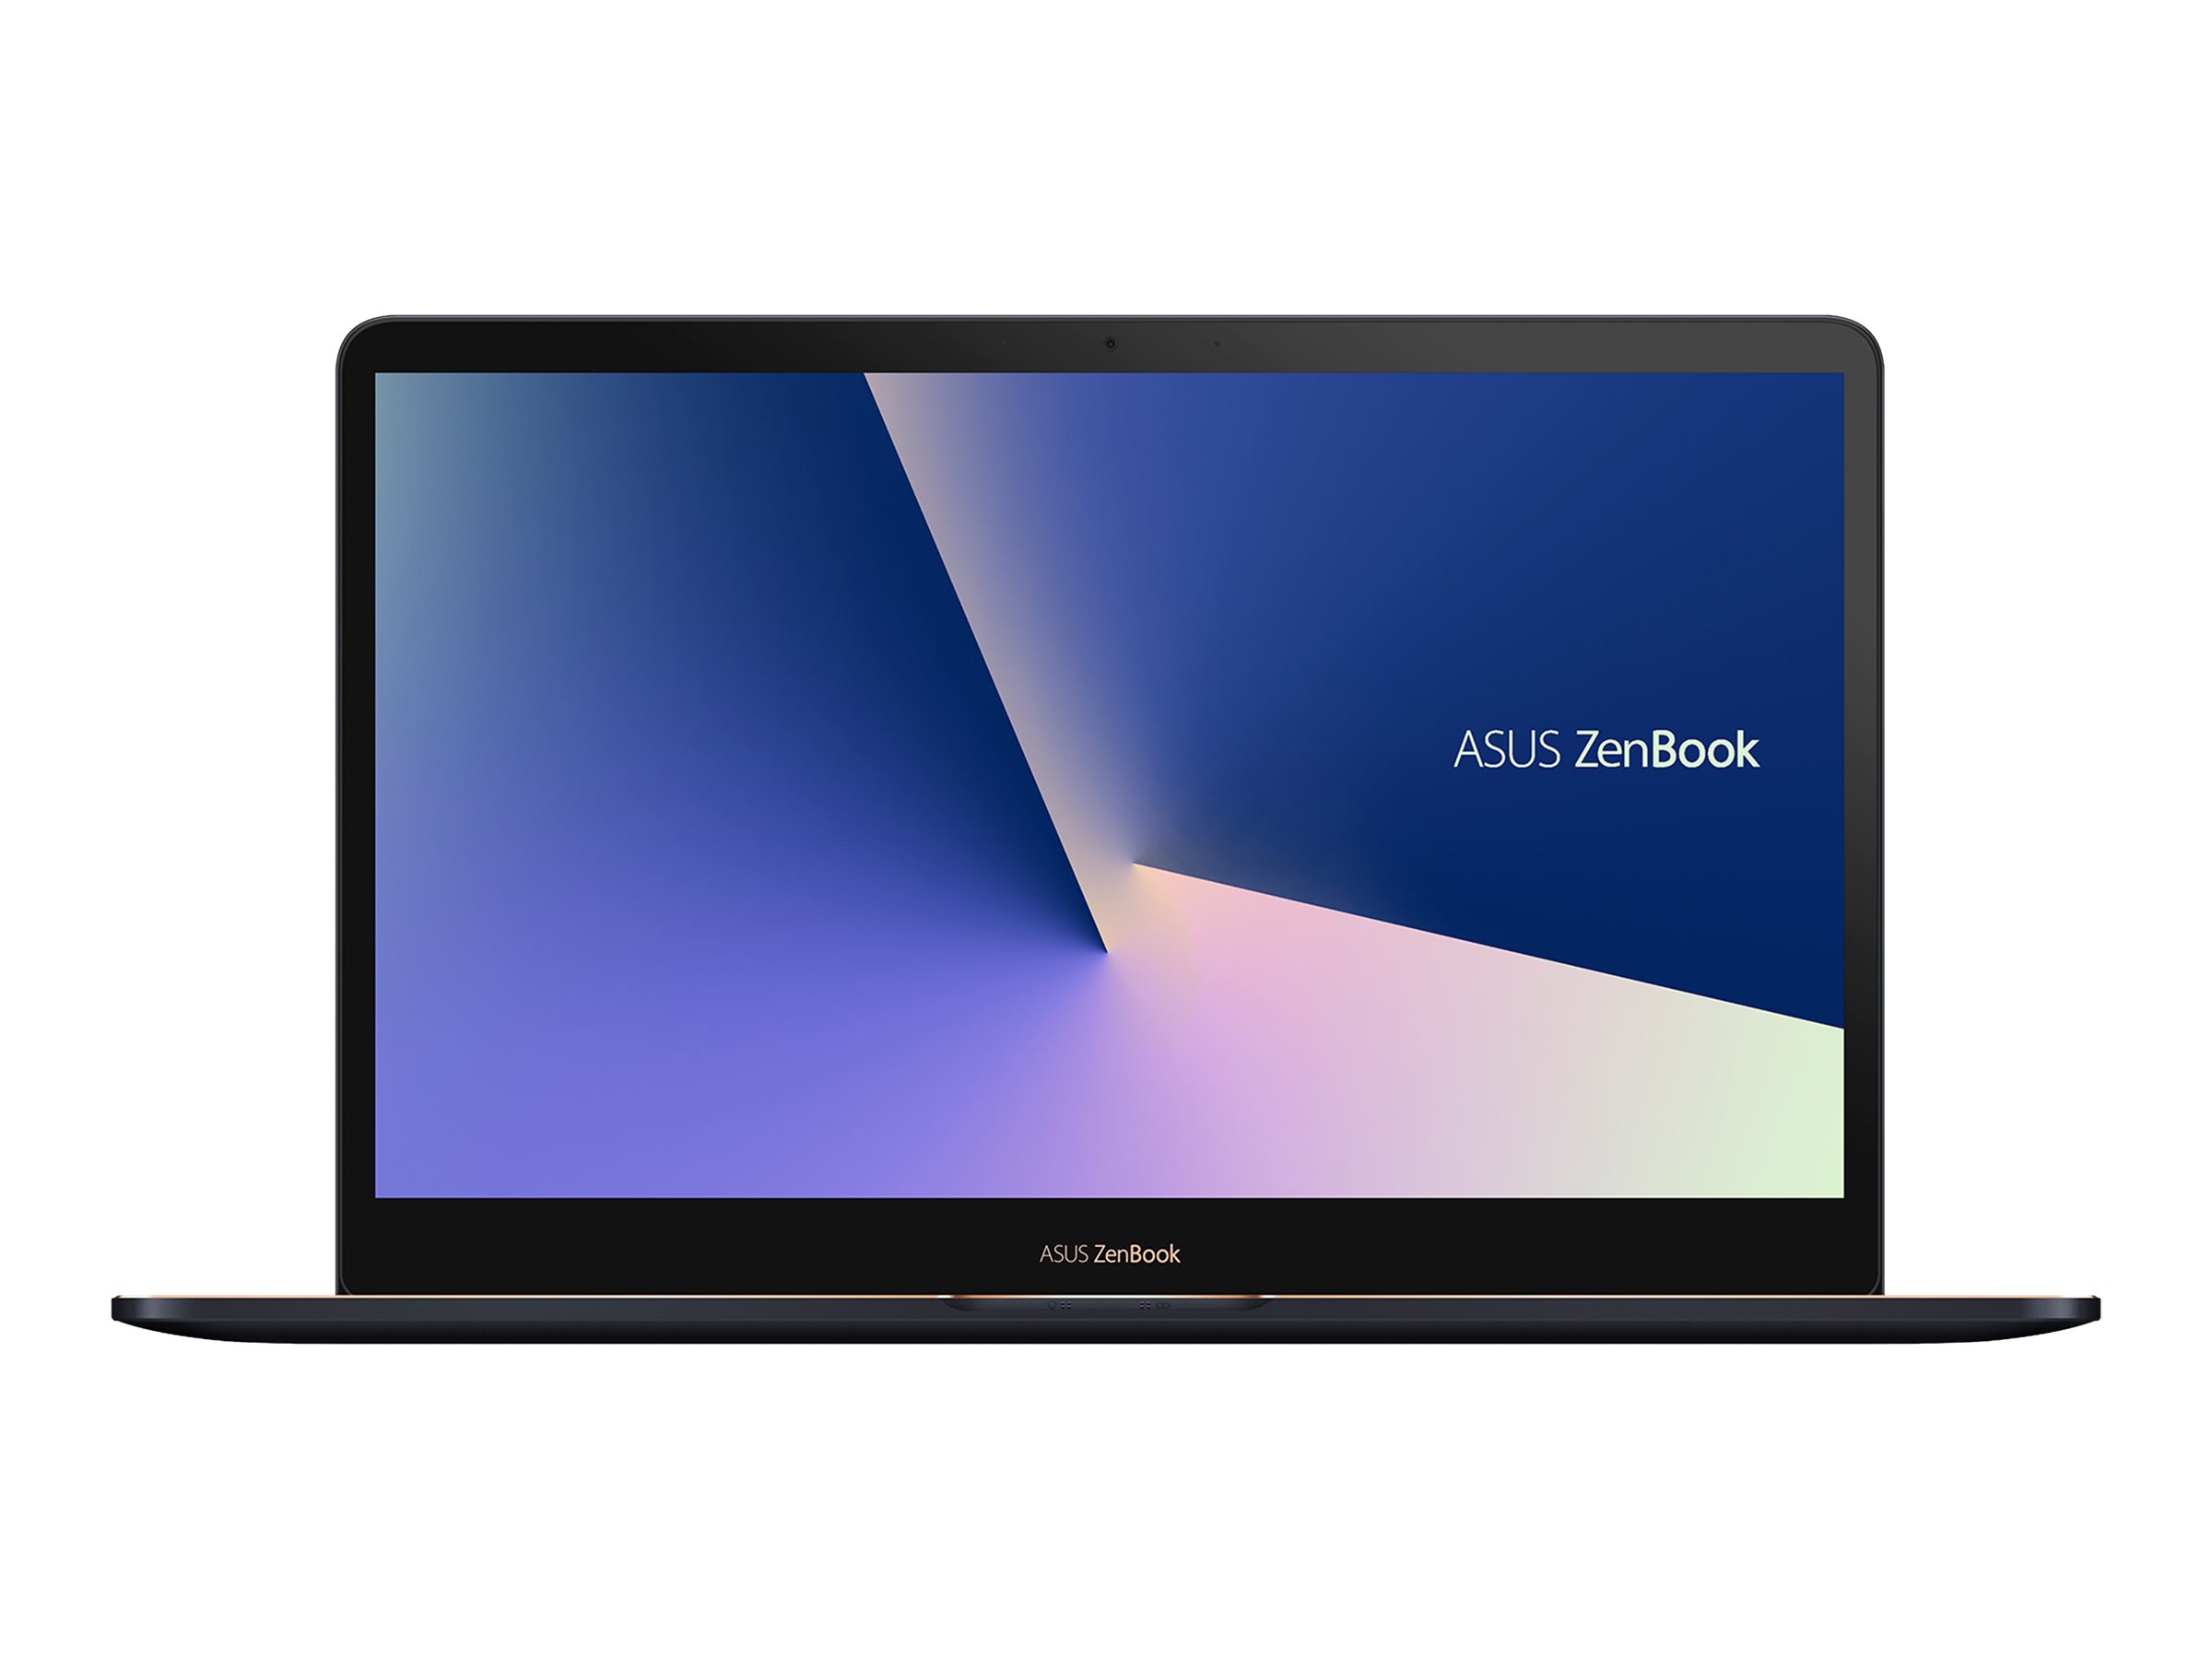 ASUS ZenBook Pro 15 UX550GD (E2041T)